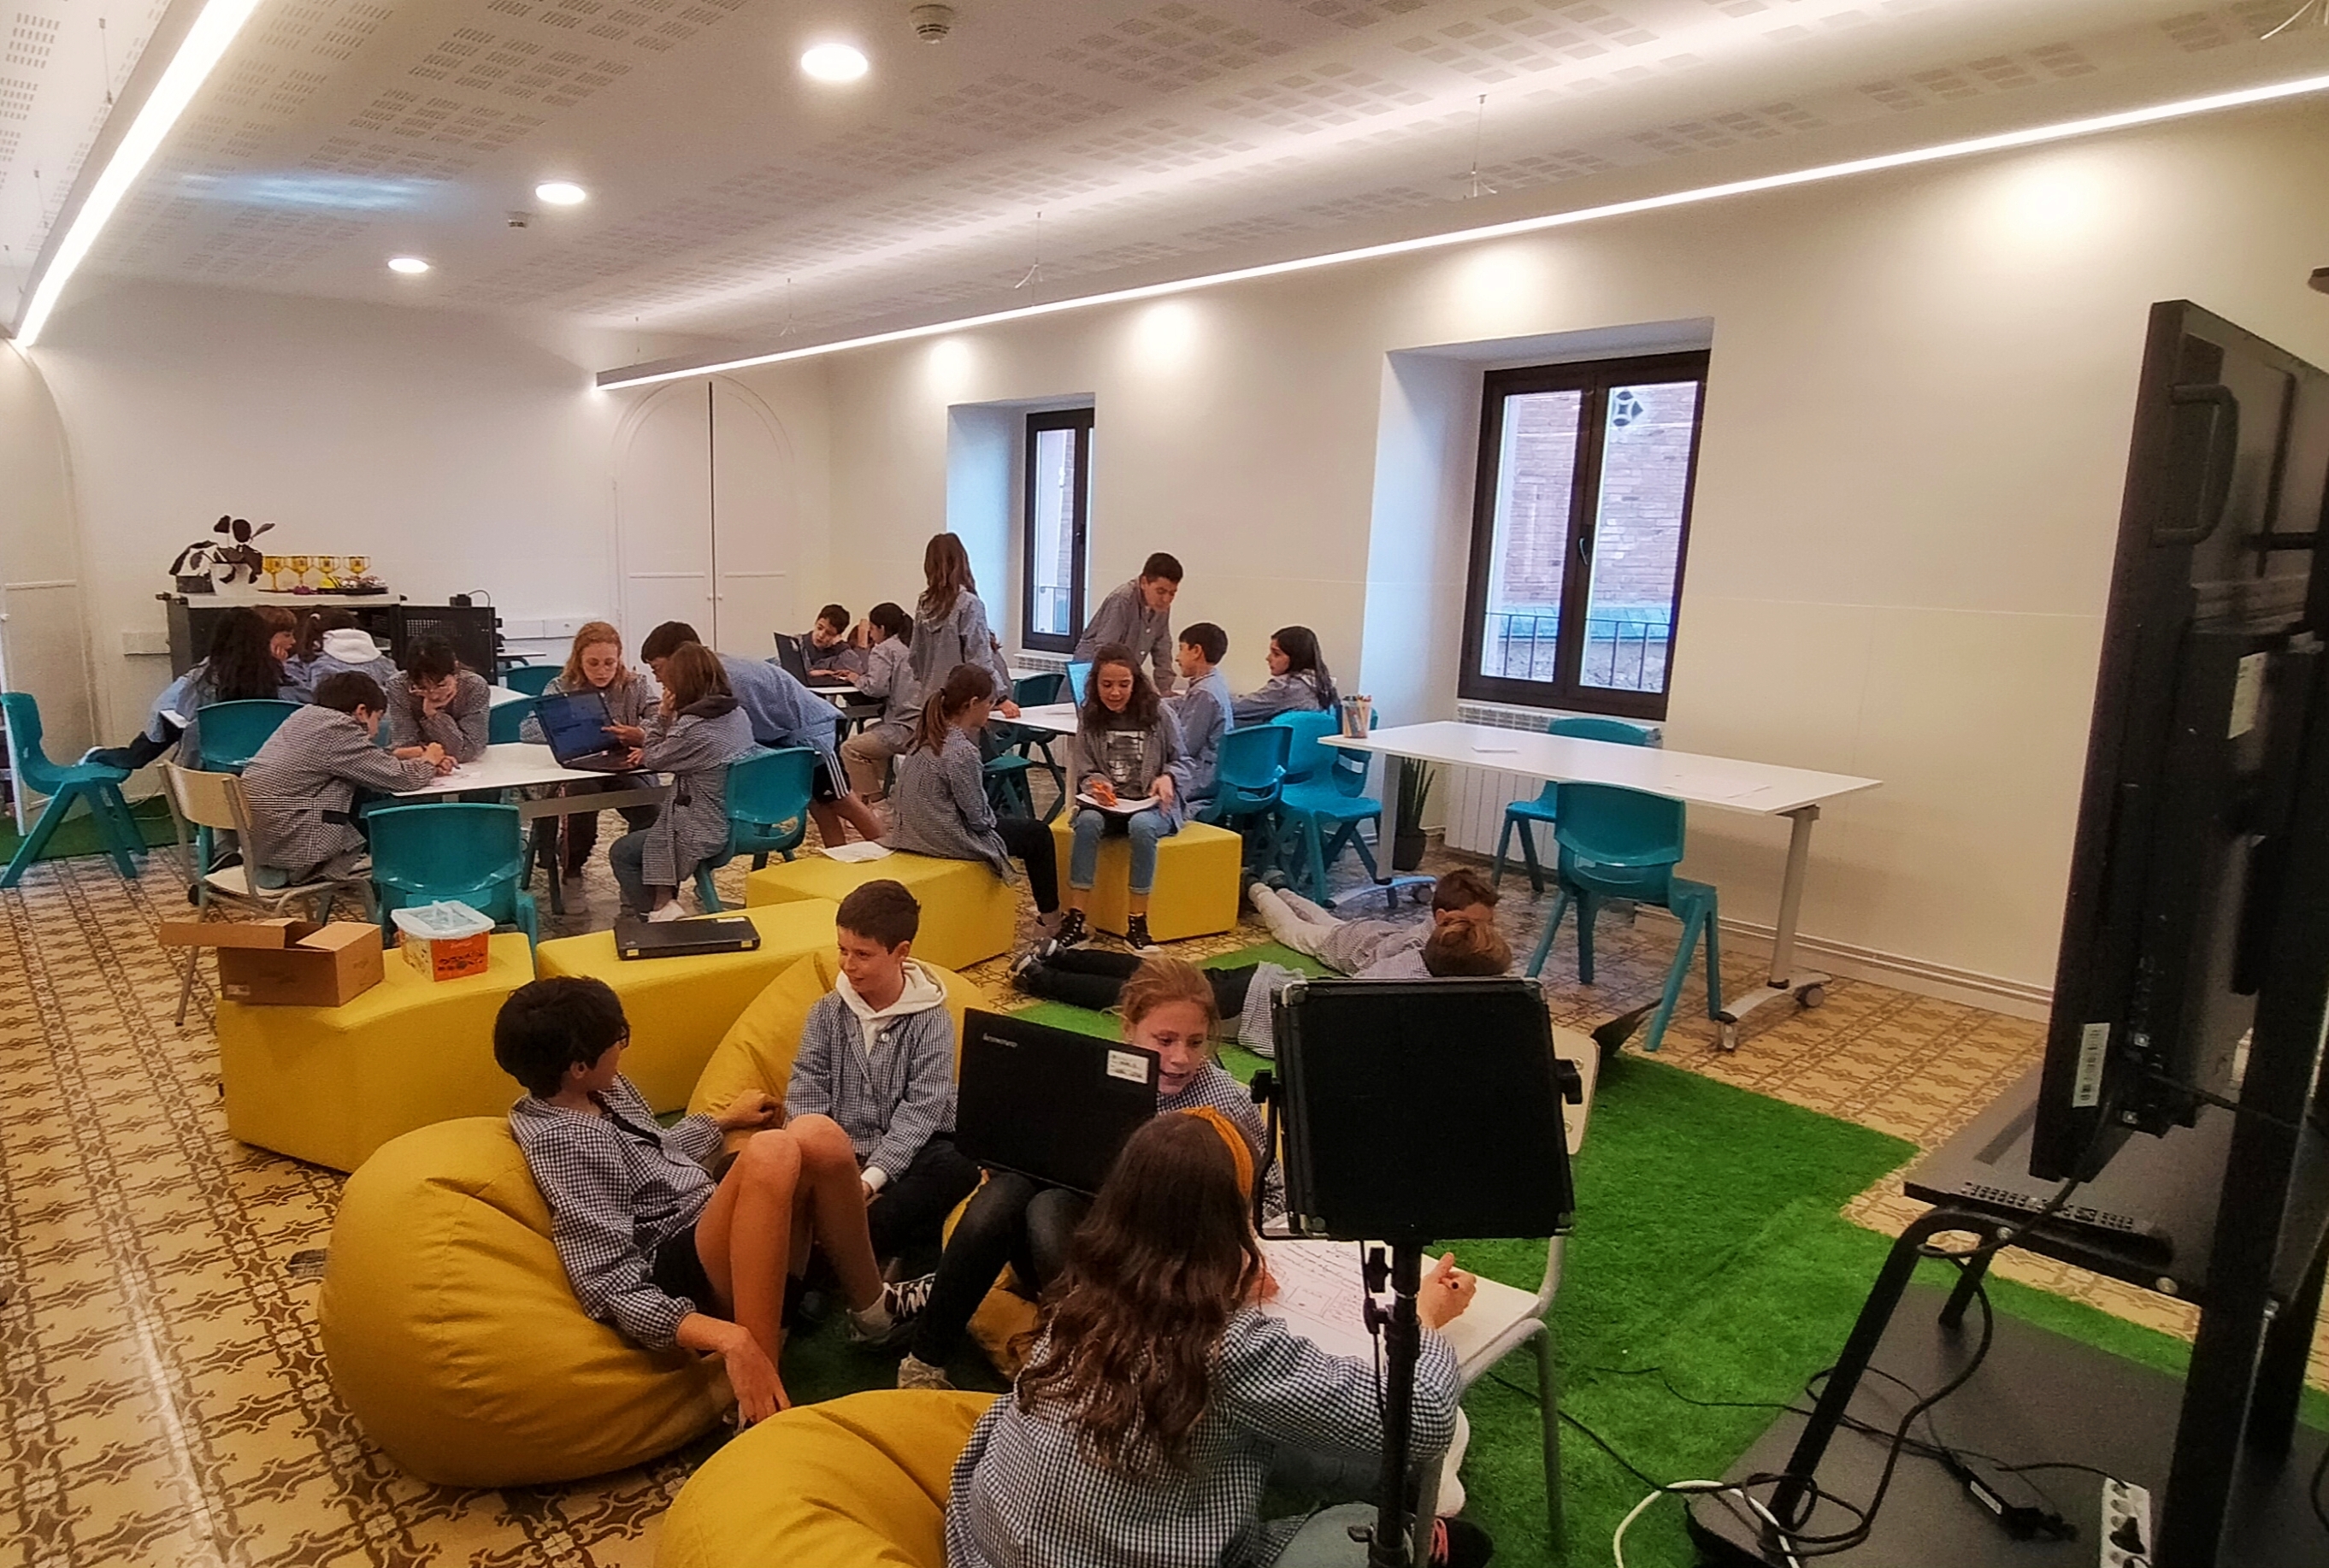 Lestonnac - Estudiantes trabajando en distintas zonas del Aula del Futuro